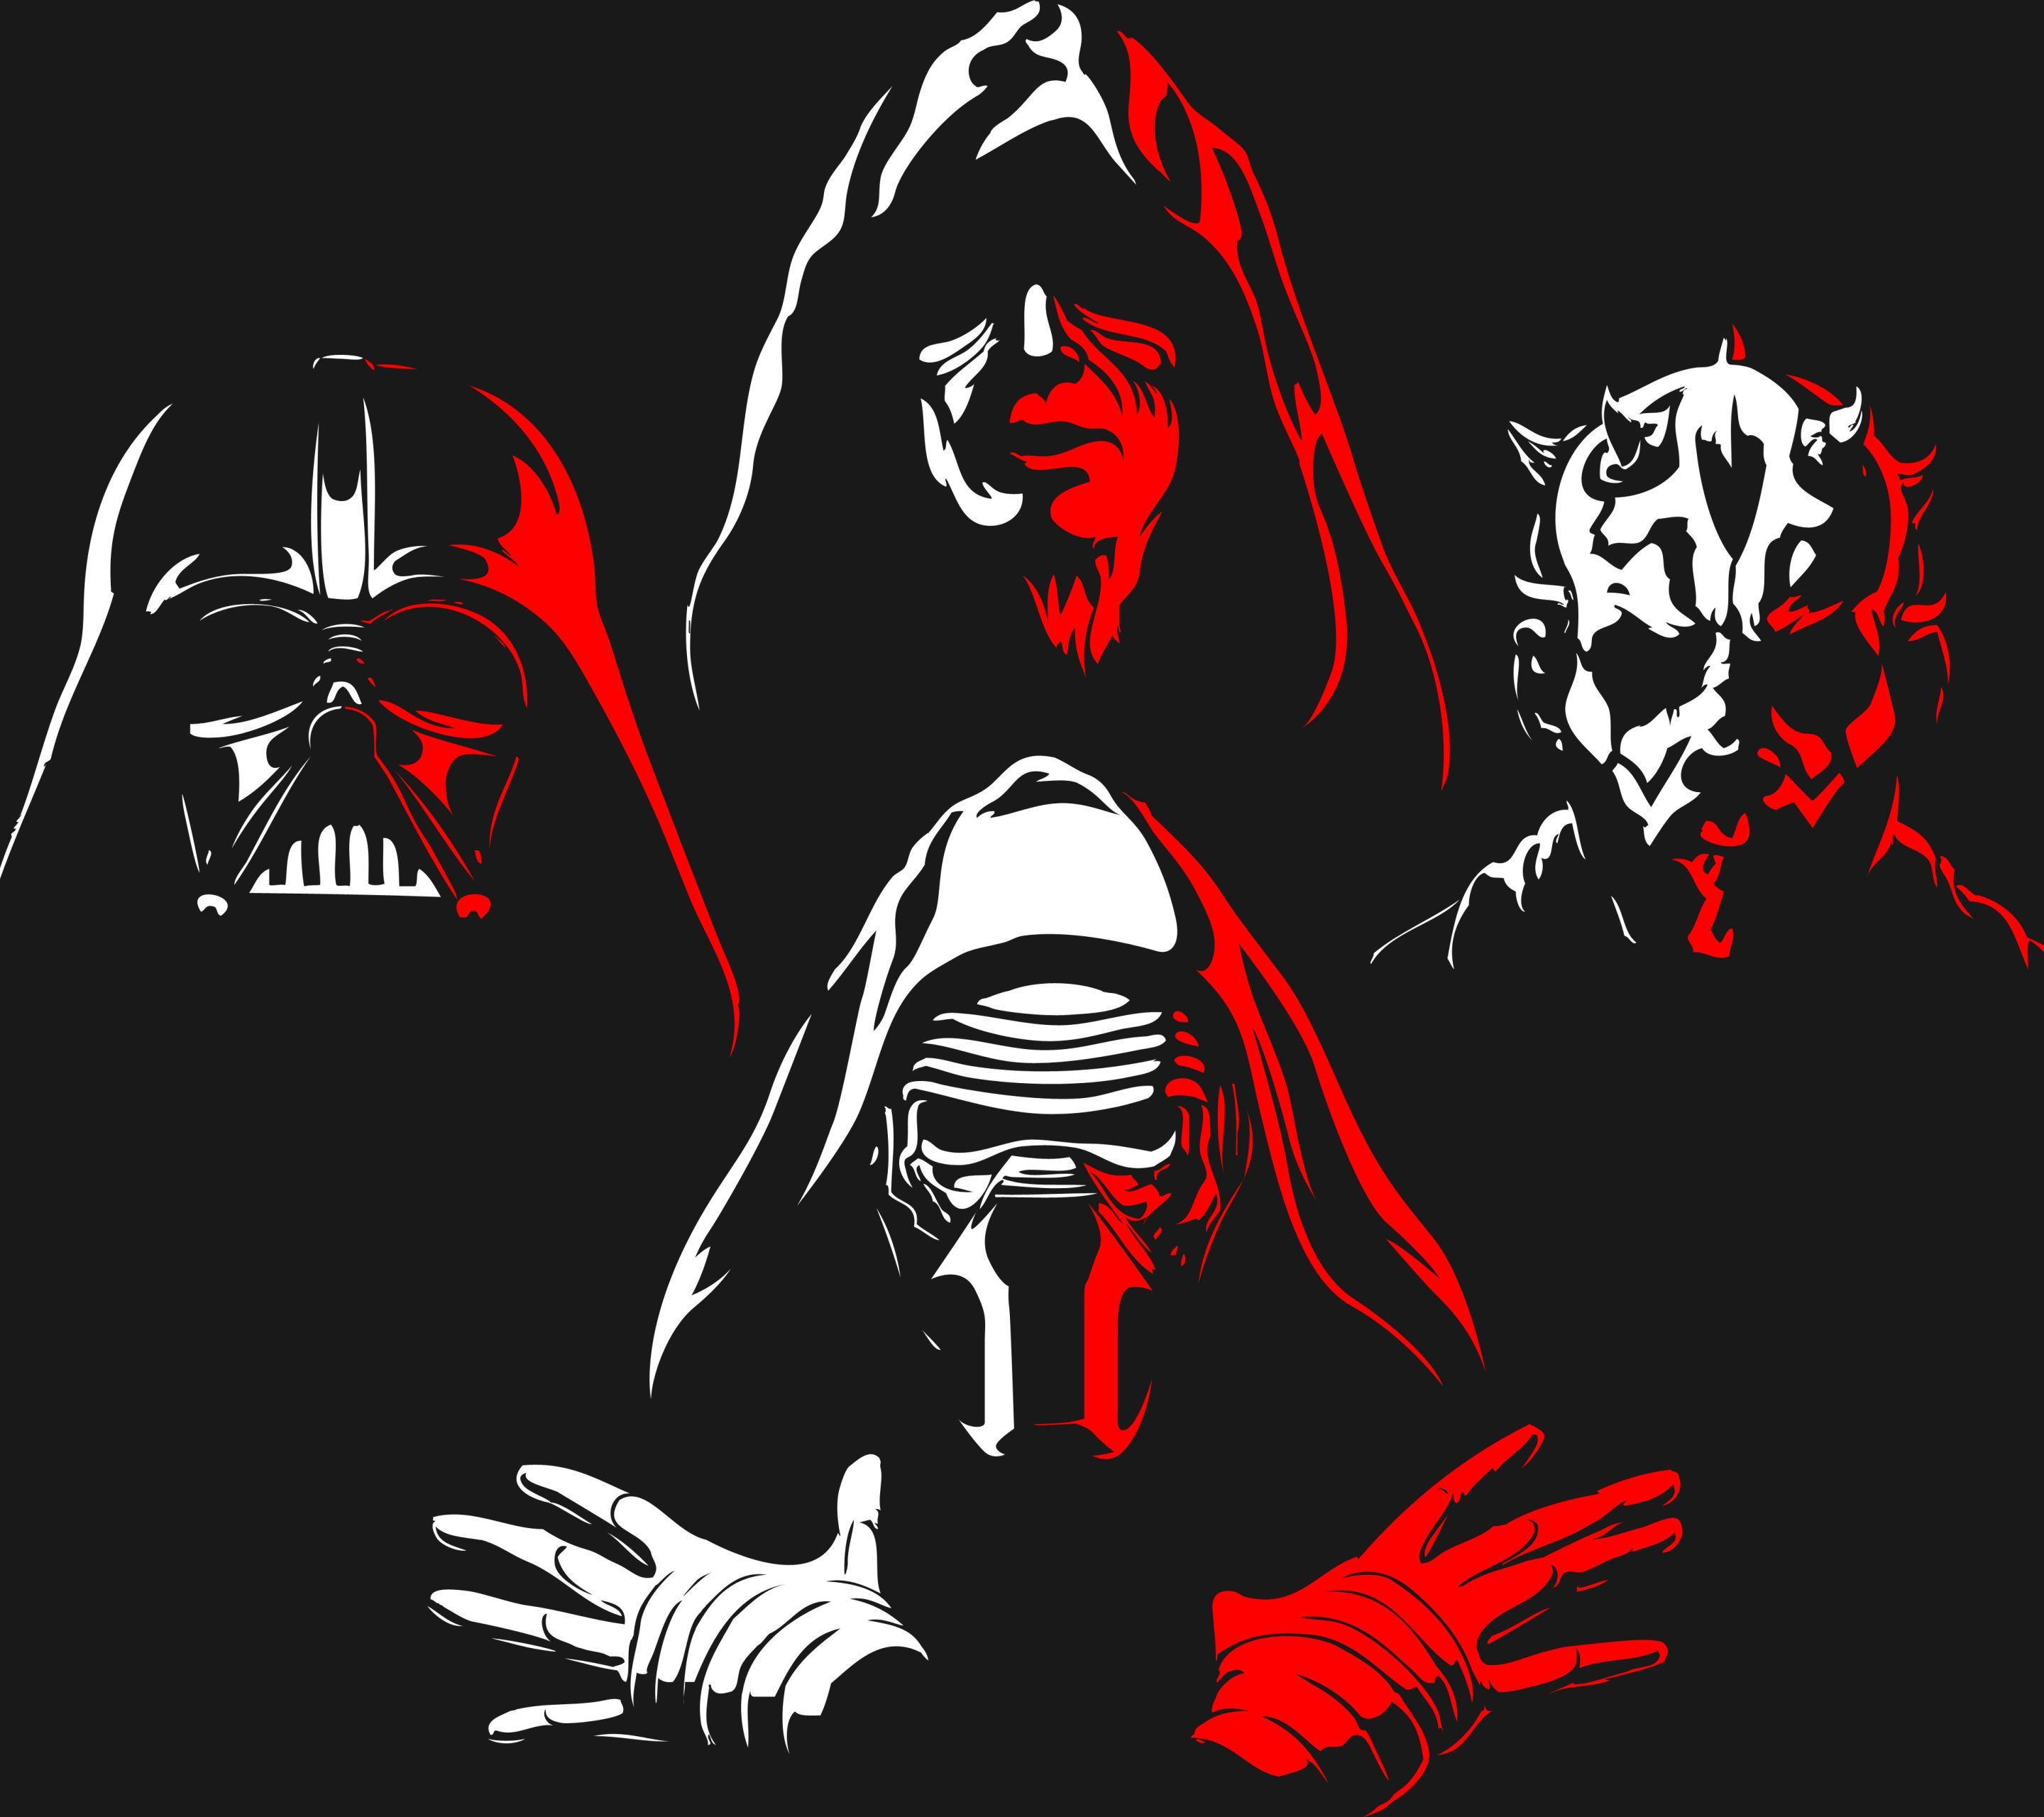 Star Wars Villains Wallpaper Free Star Wars Villains Background